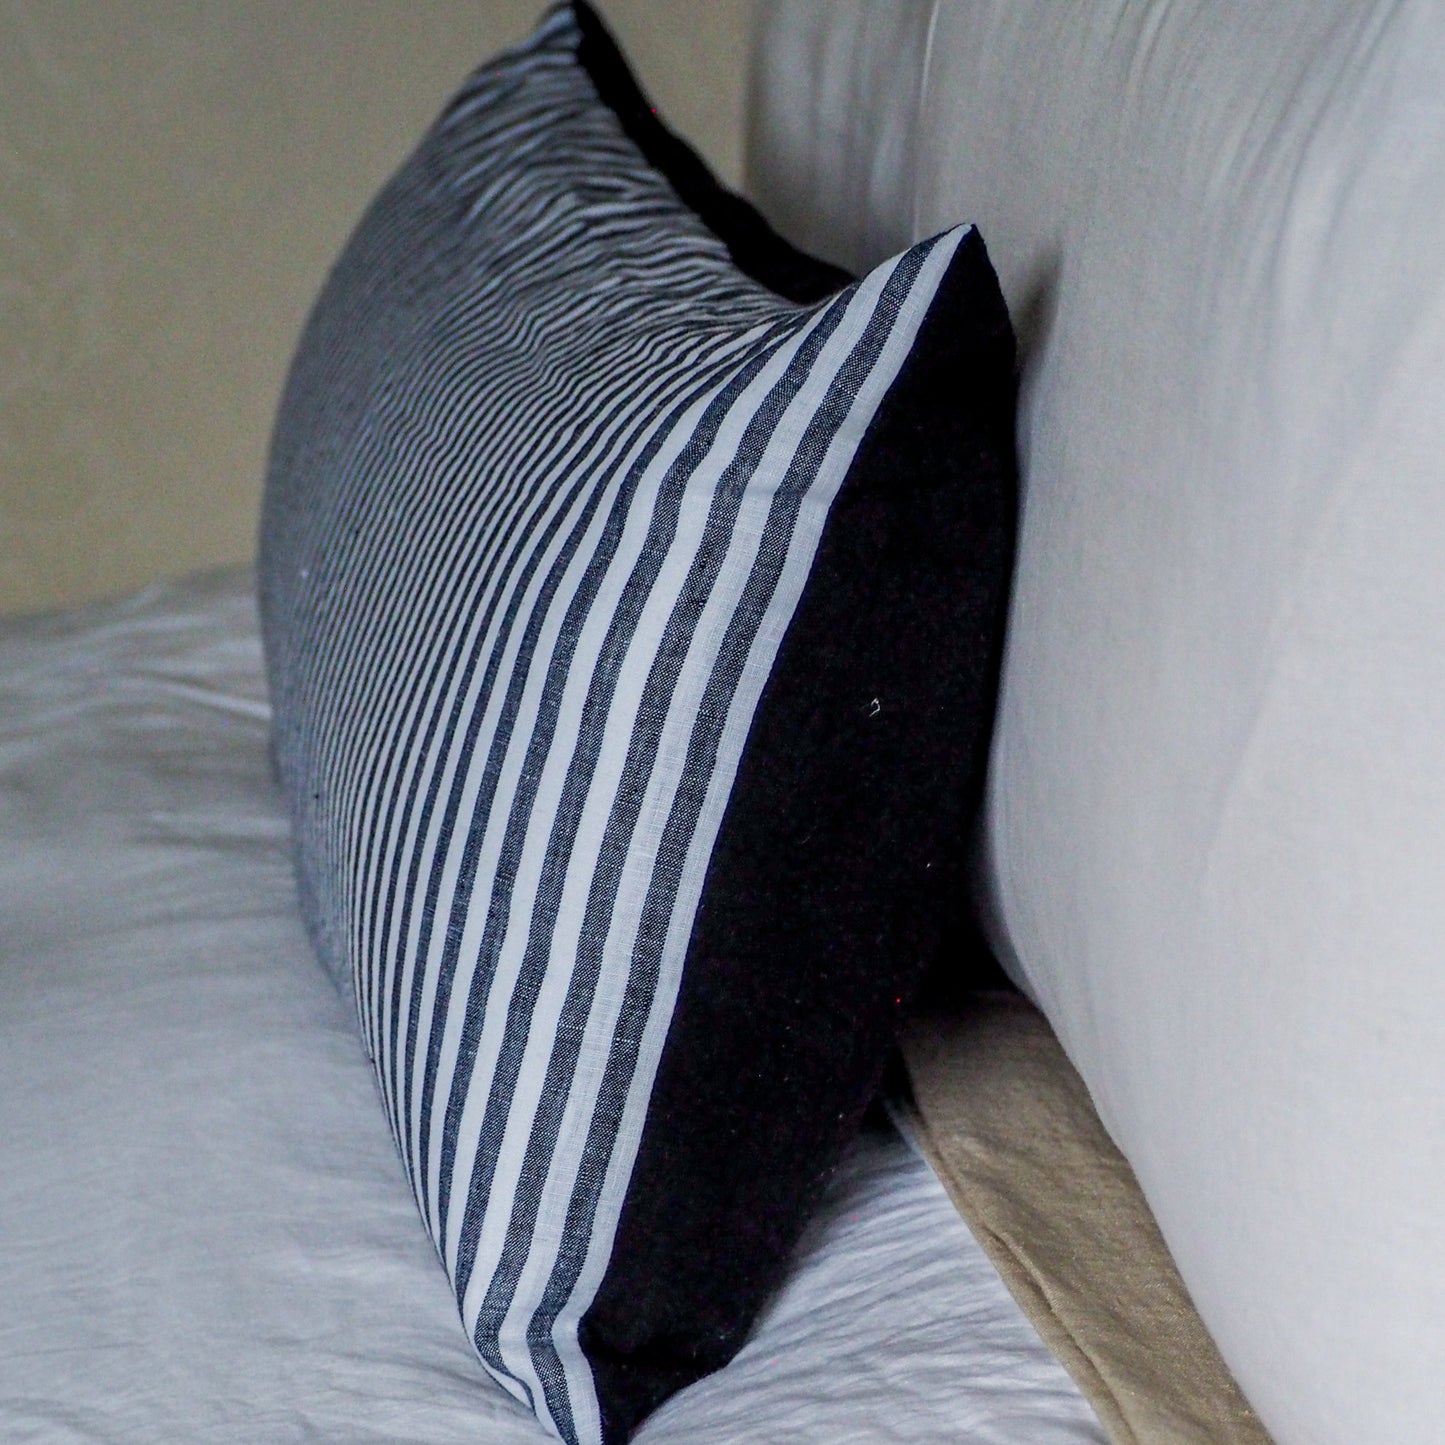 Black & White Striped Cushion | 80cm